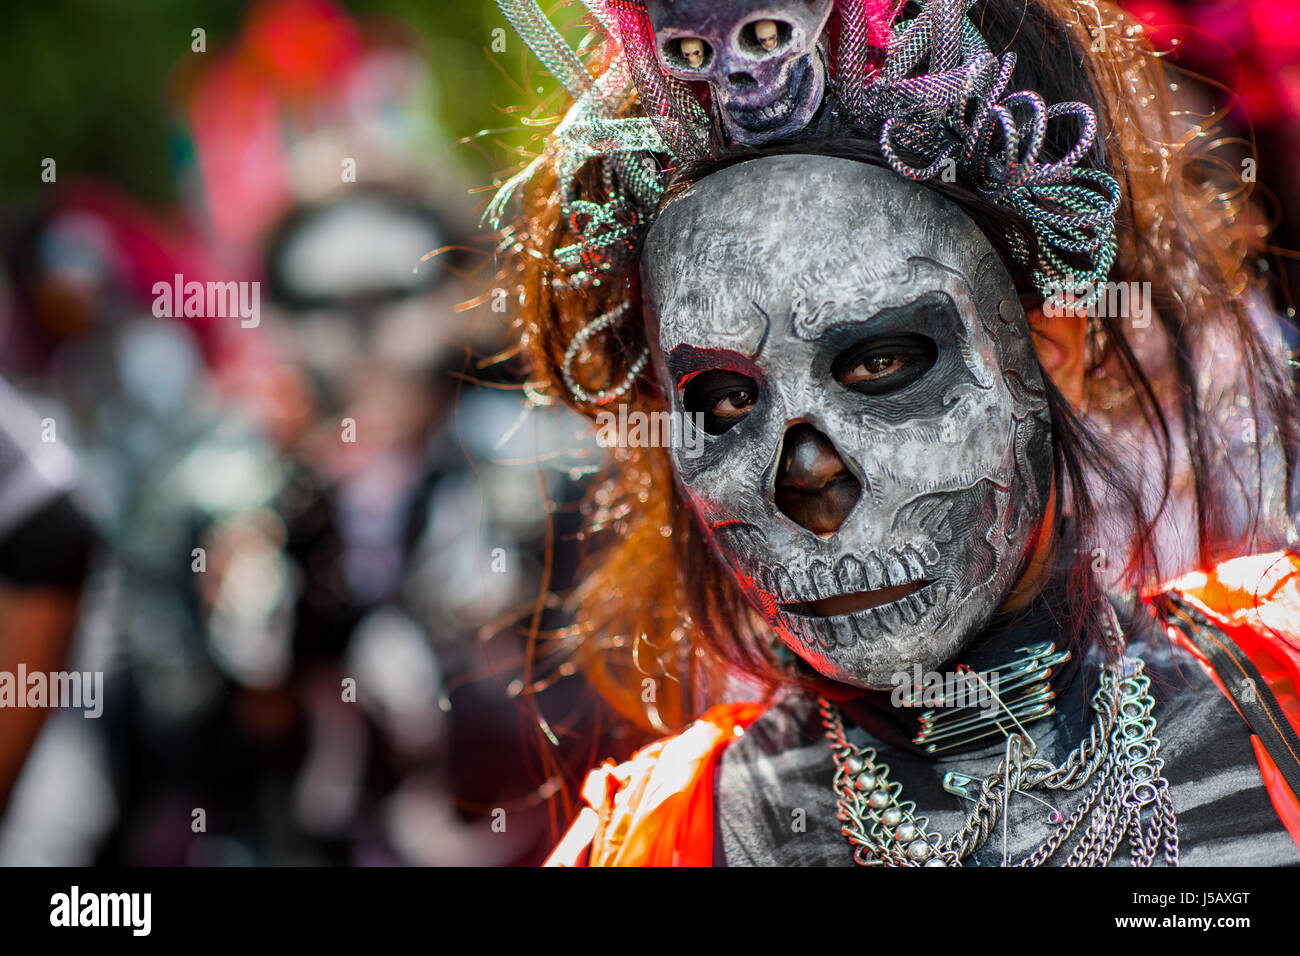 Une jeune femme, habillée comme La Catrina, prend part à la Journée de la fête des morts à Mexico, au Mexique. Banque D'Images